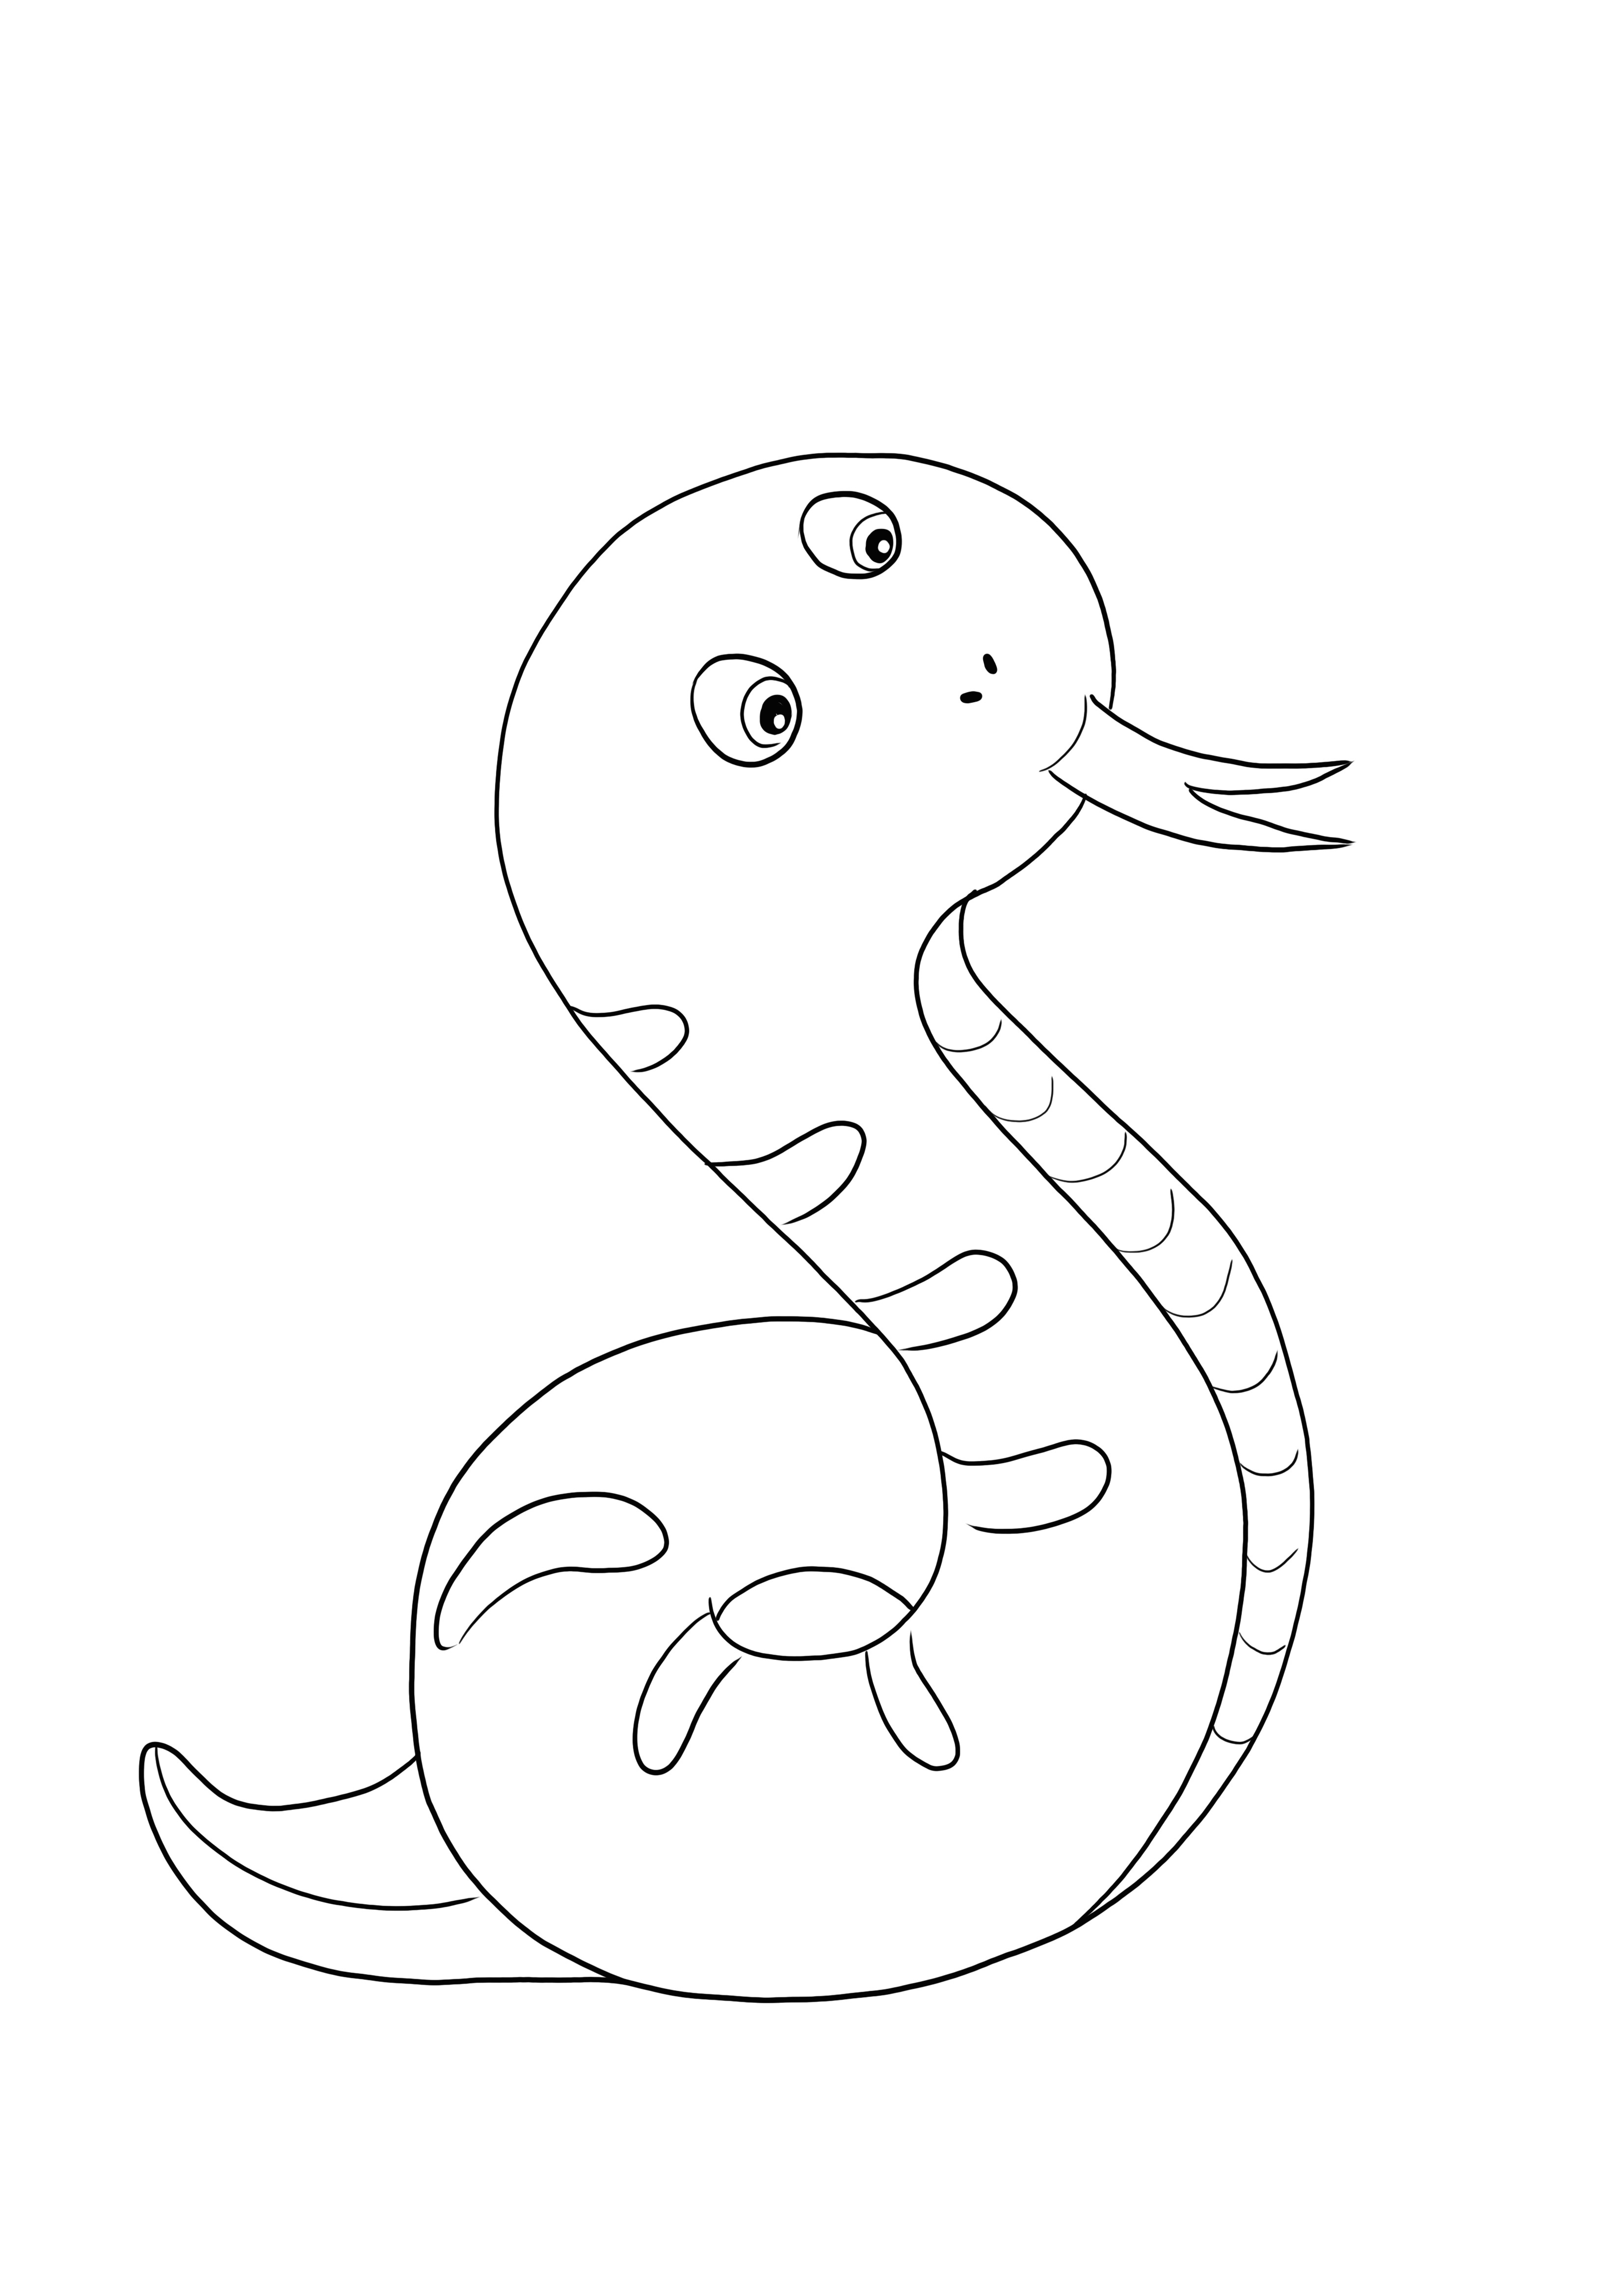 Serpiente Emoji para imprimir y colorear gratis imagen para todos los niños